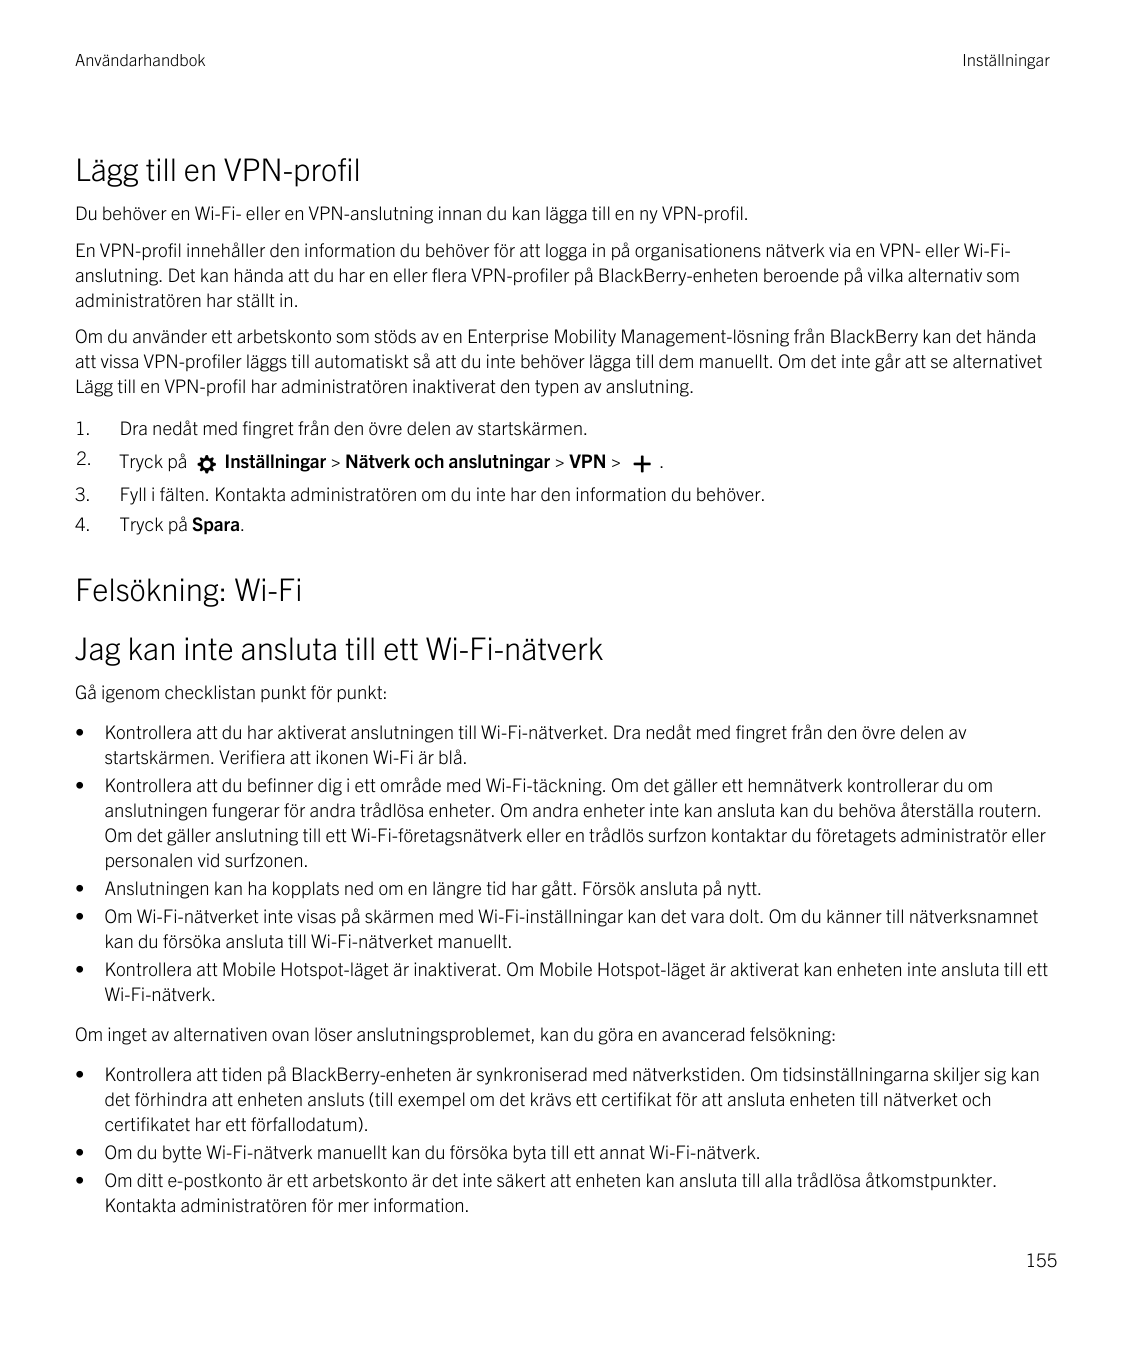 AnvändarhandbokInställningarLägg till en VPN-profilDu behöver en Wi-Fi- eller en VPN-anslutning innan du kan lägga till en ny VP